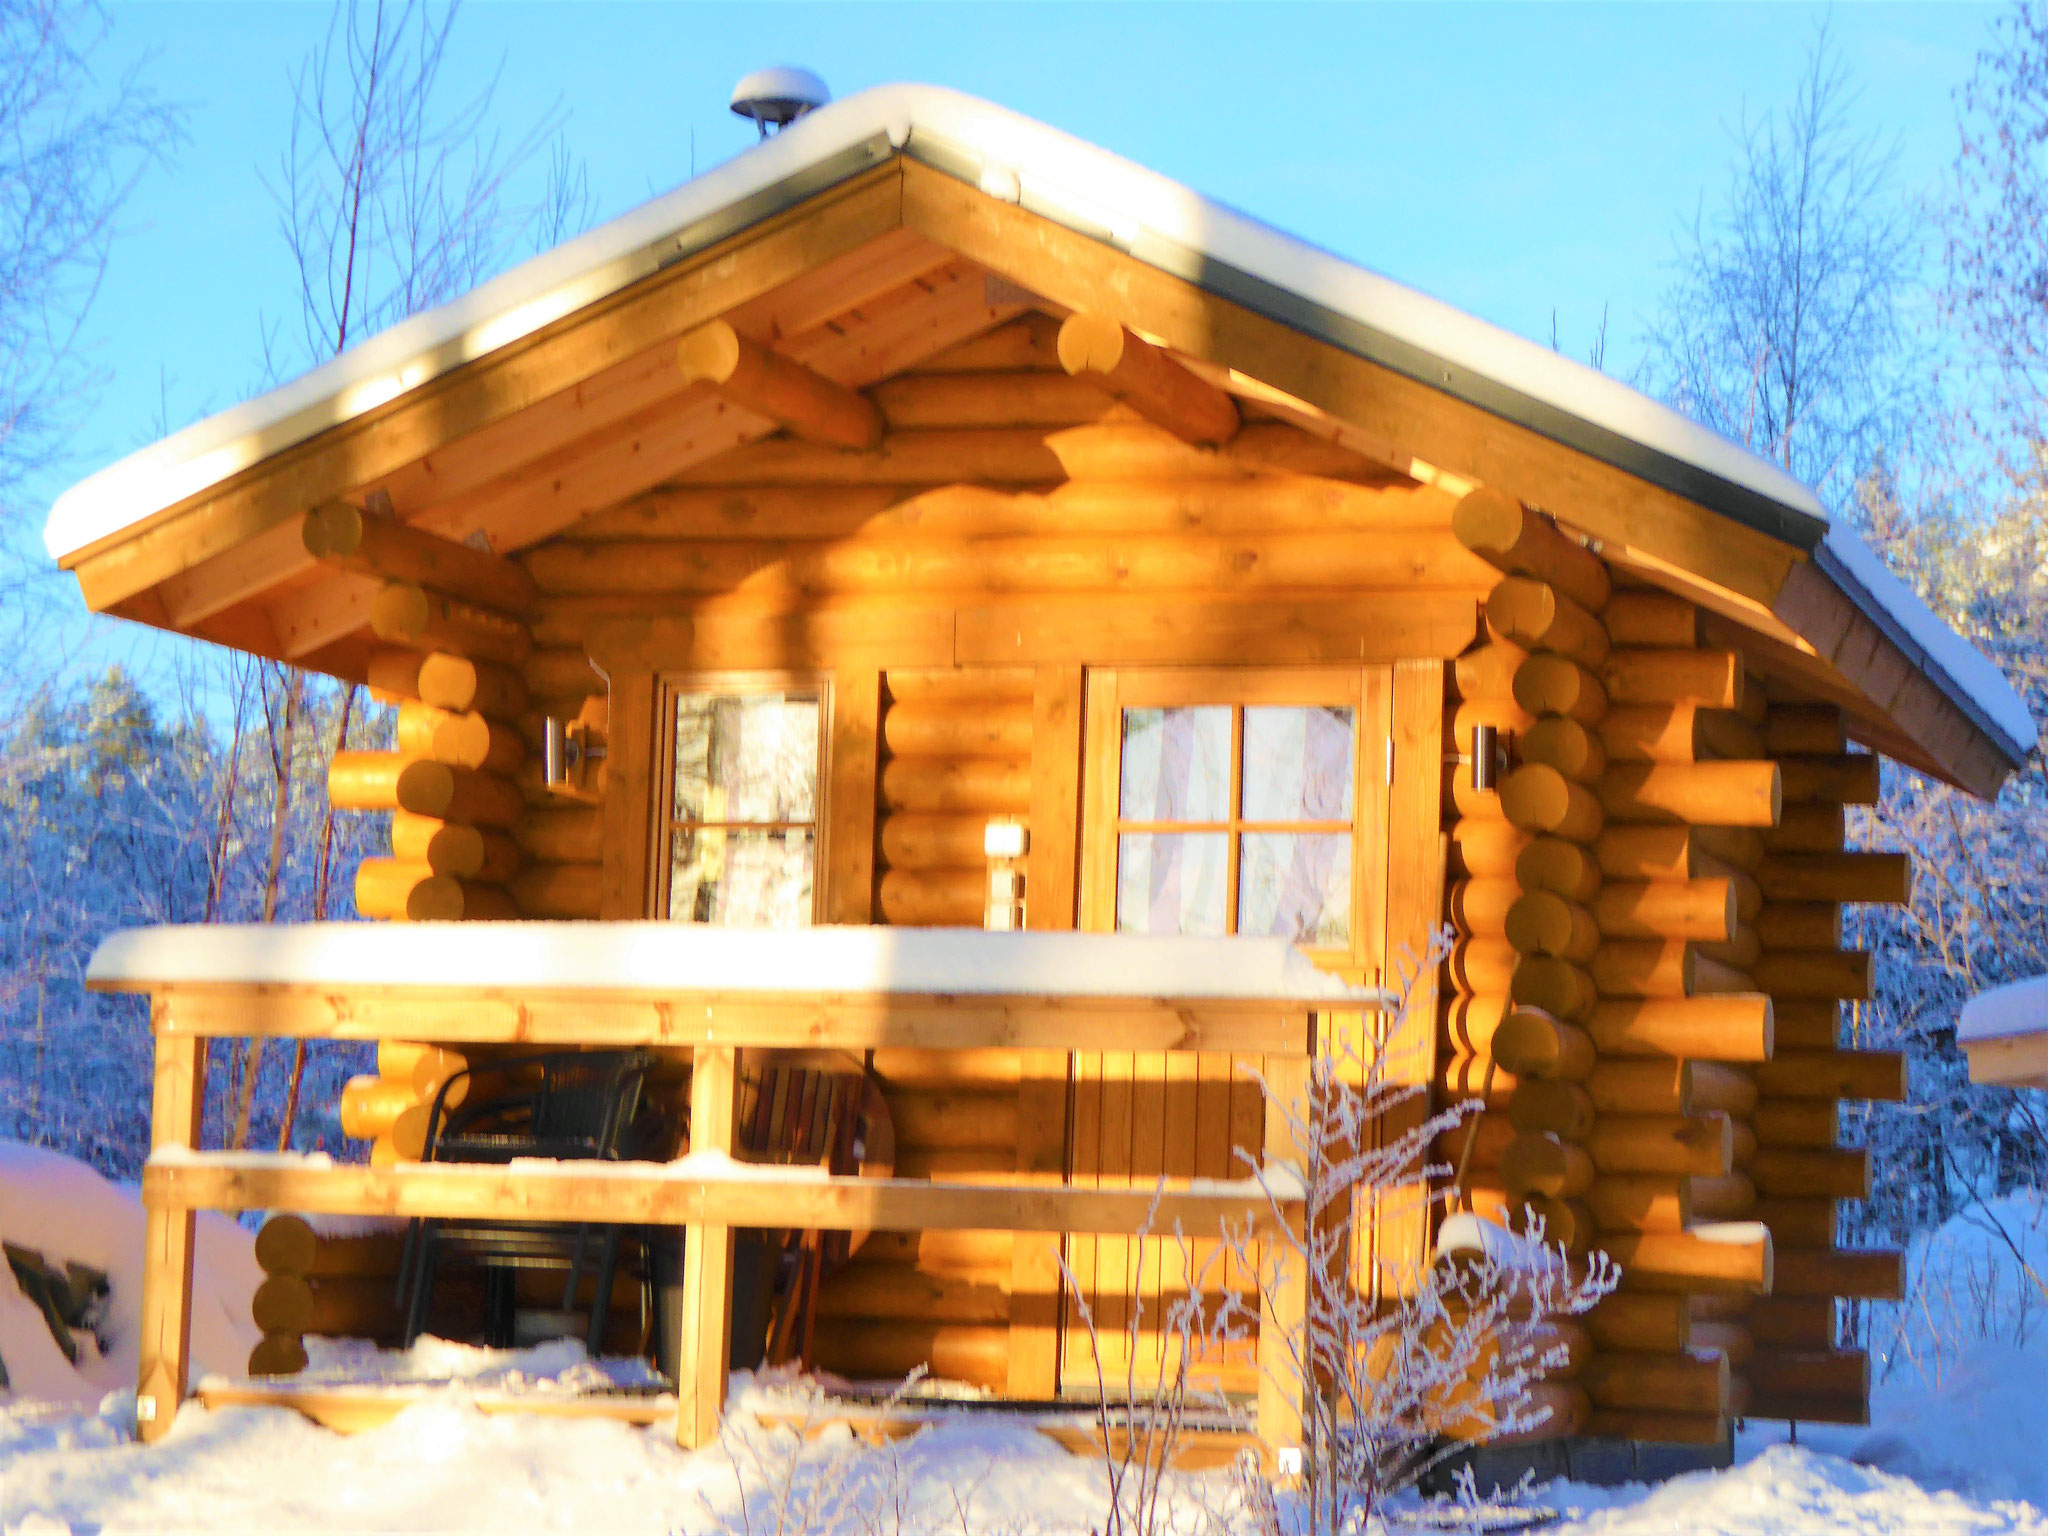 Erleben Sie auch im Winter traditionelles, finnisches Saunabaden am gefrorenen See mit Ihrem selbst gemachten Eisloch